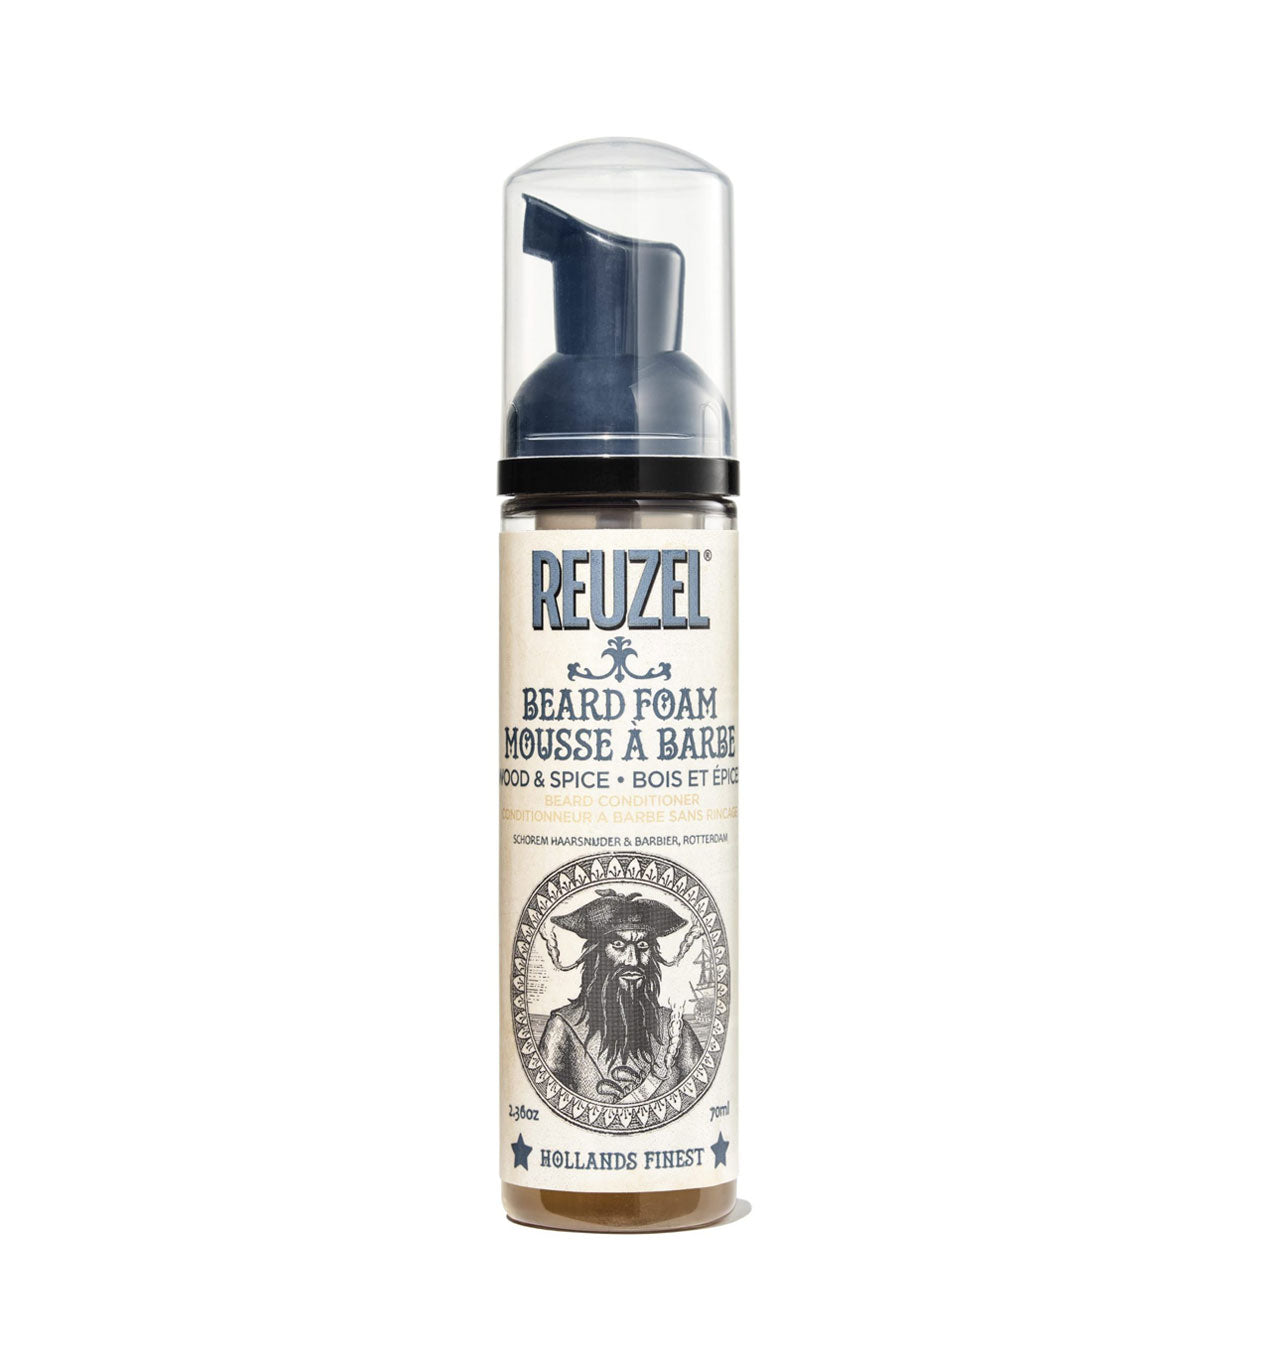 Reuzel Beard Foam  wood and spice fragrance - for Men-gifts for men-gift ideas for men.jpg